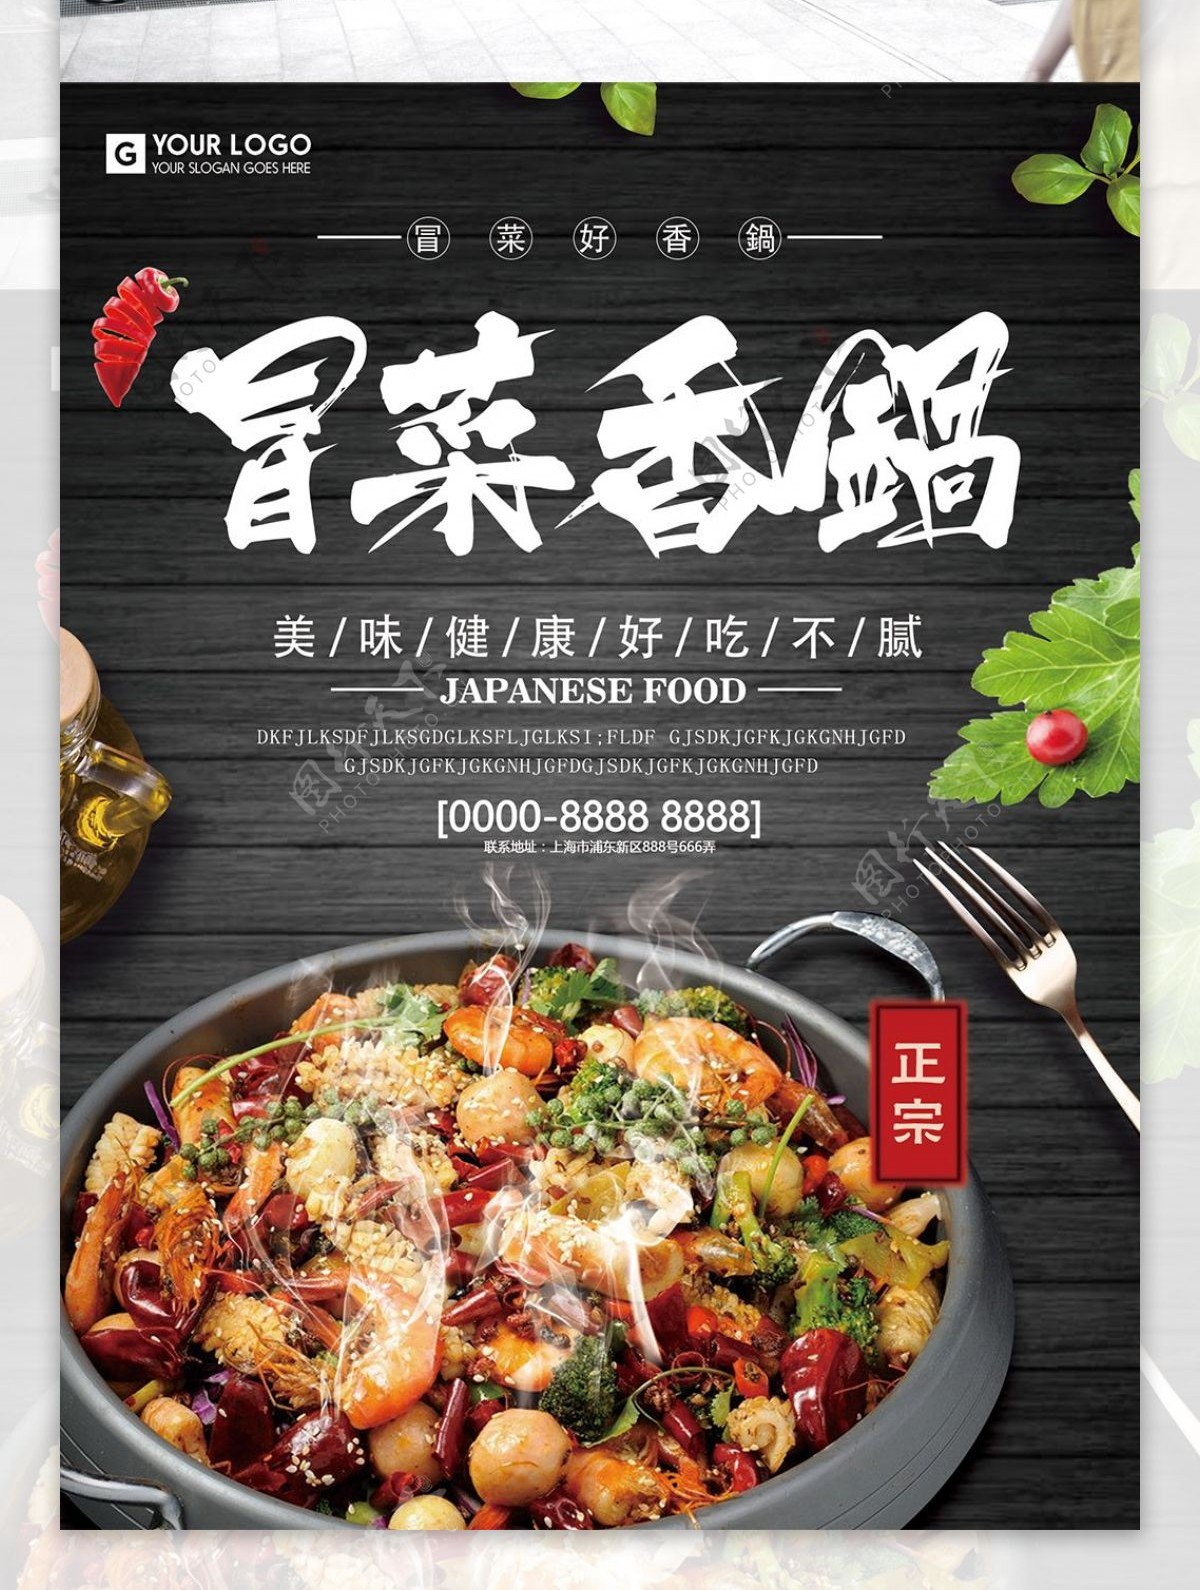 冒菜香锅美味可口食物展架海报设计